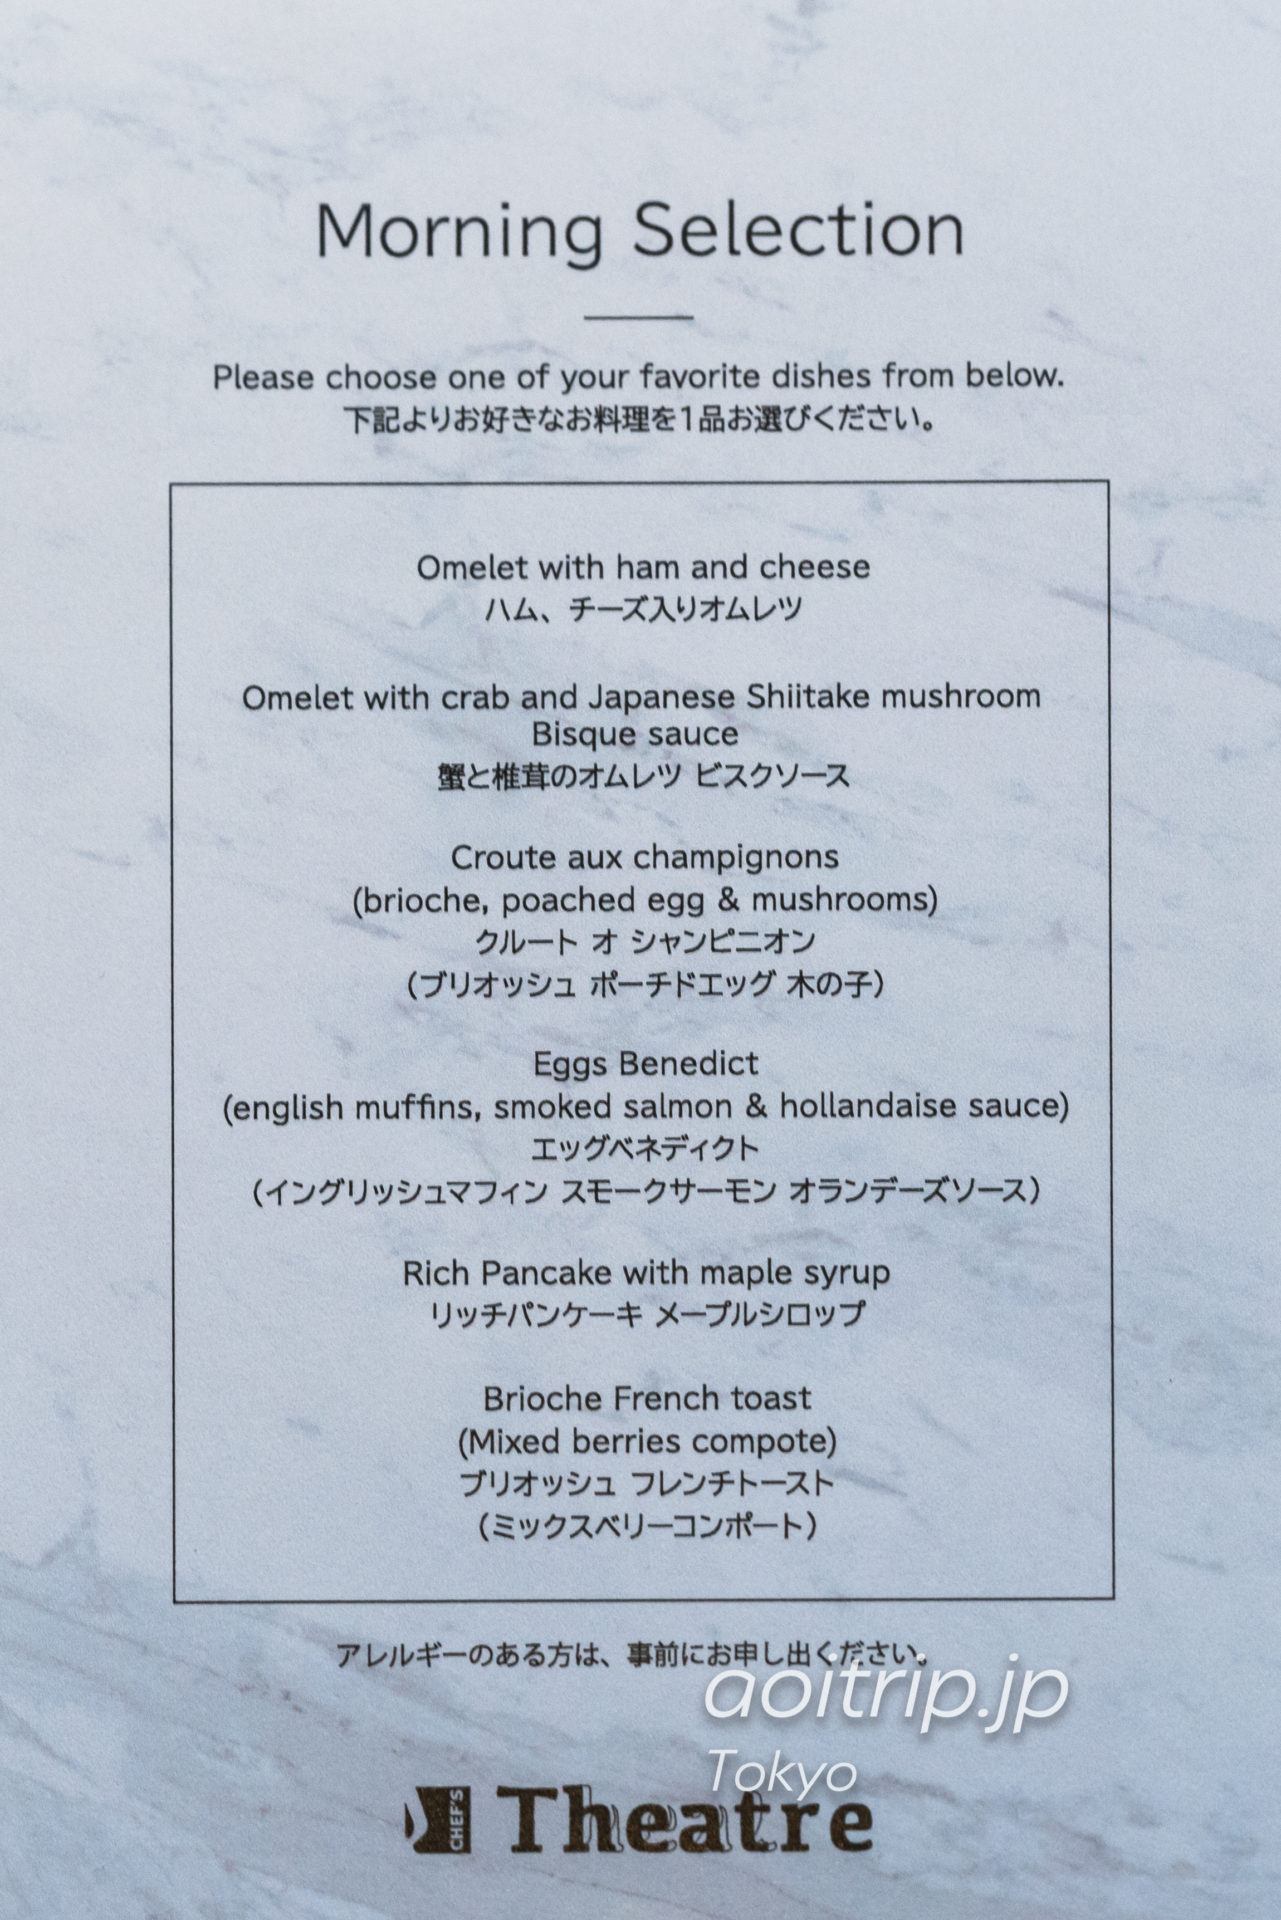 メズム東京のレストラン Chef's Theatre 朝食メニュー